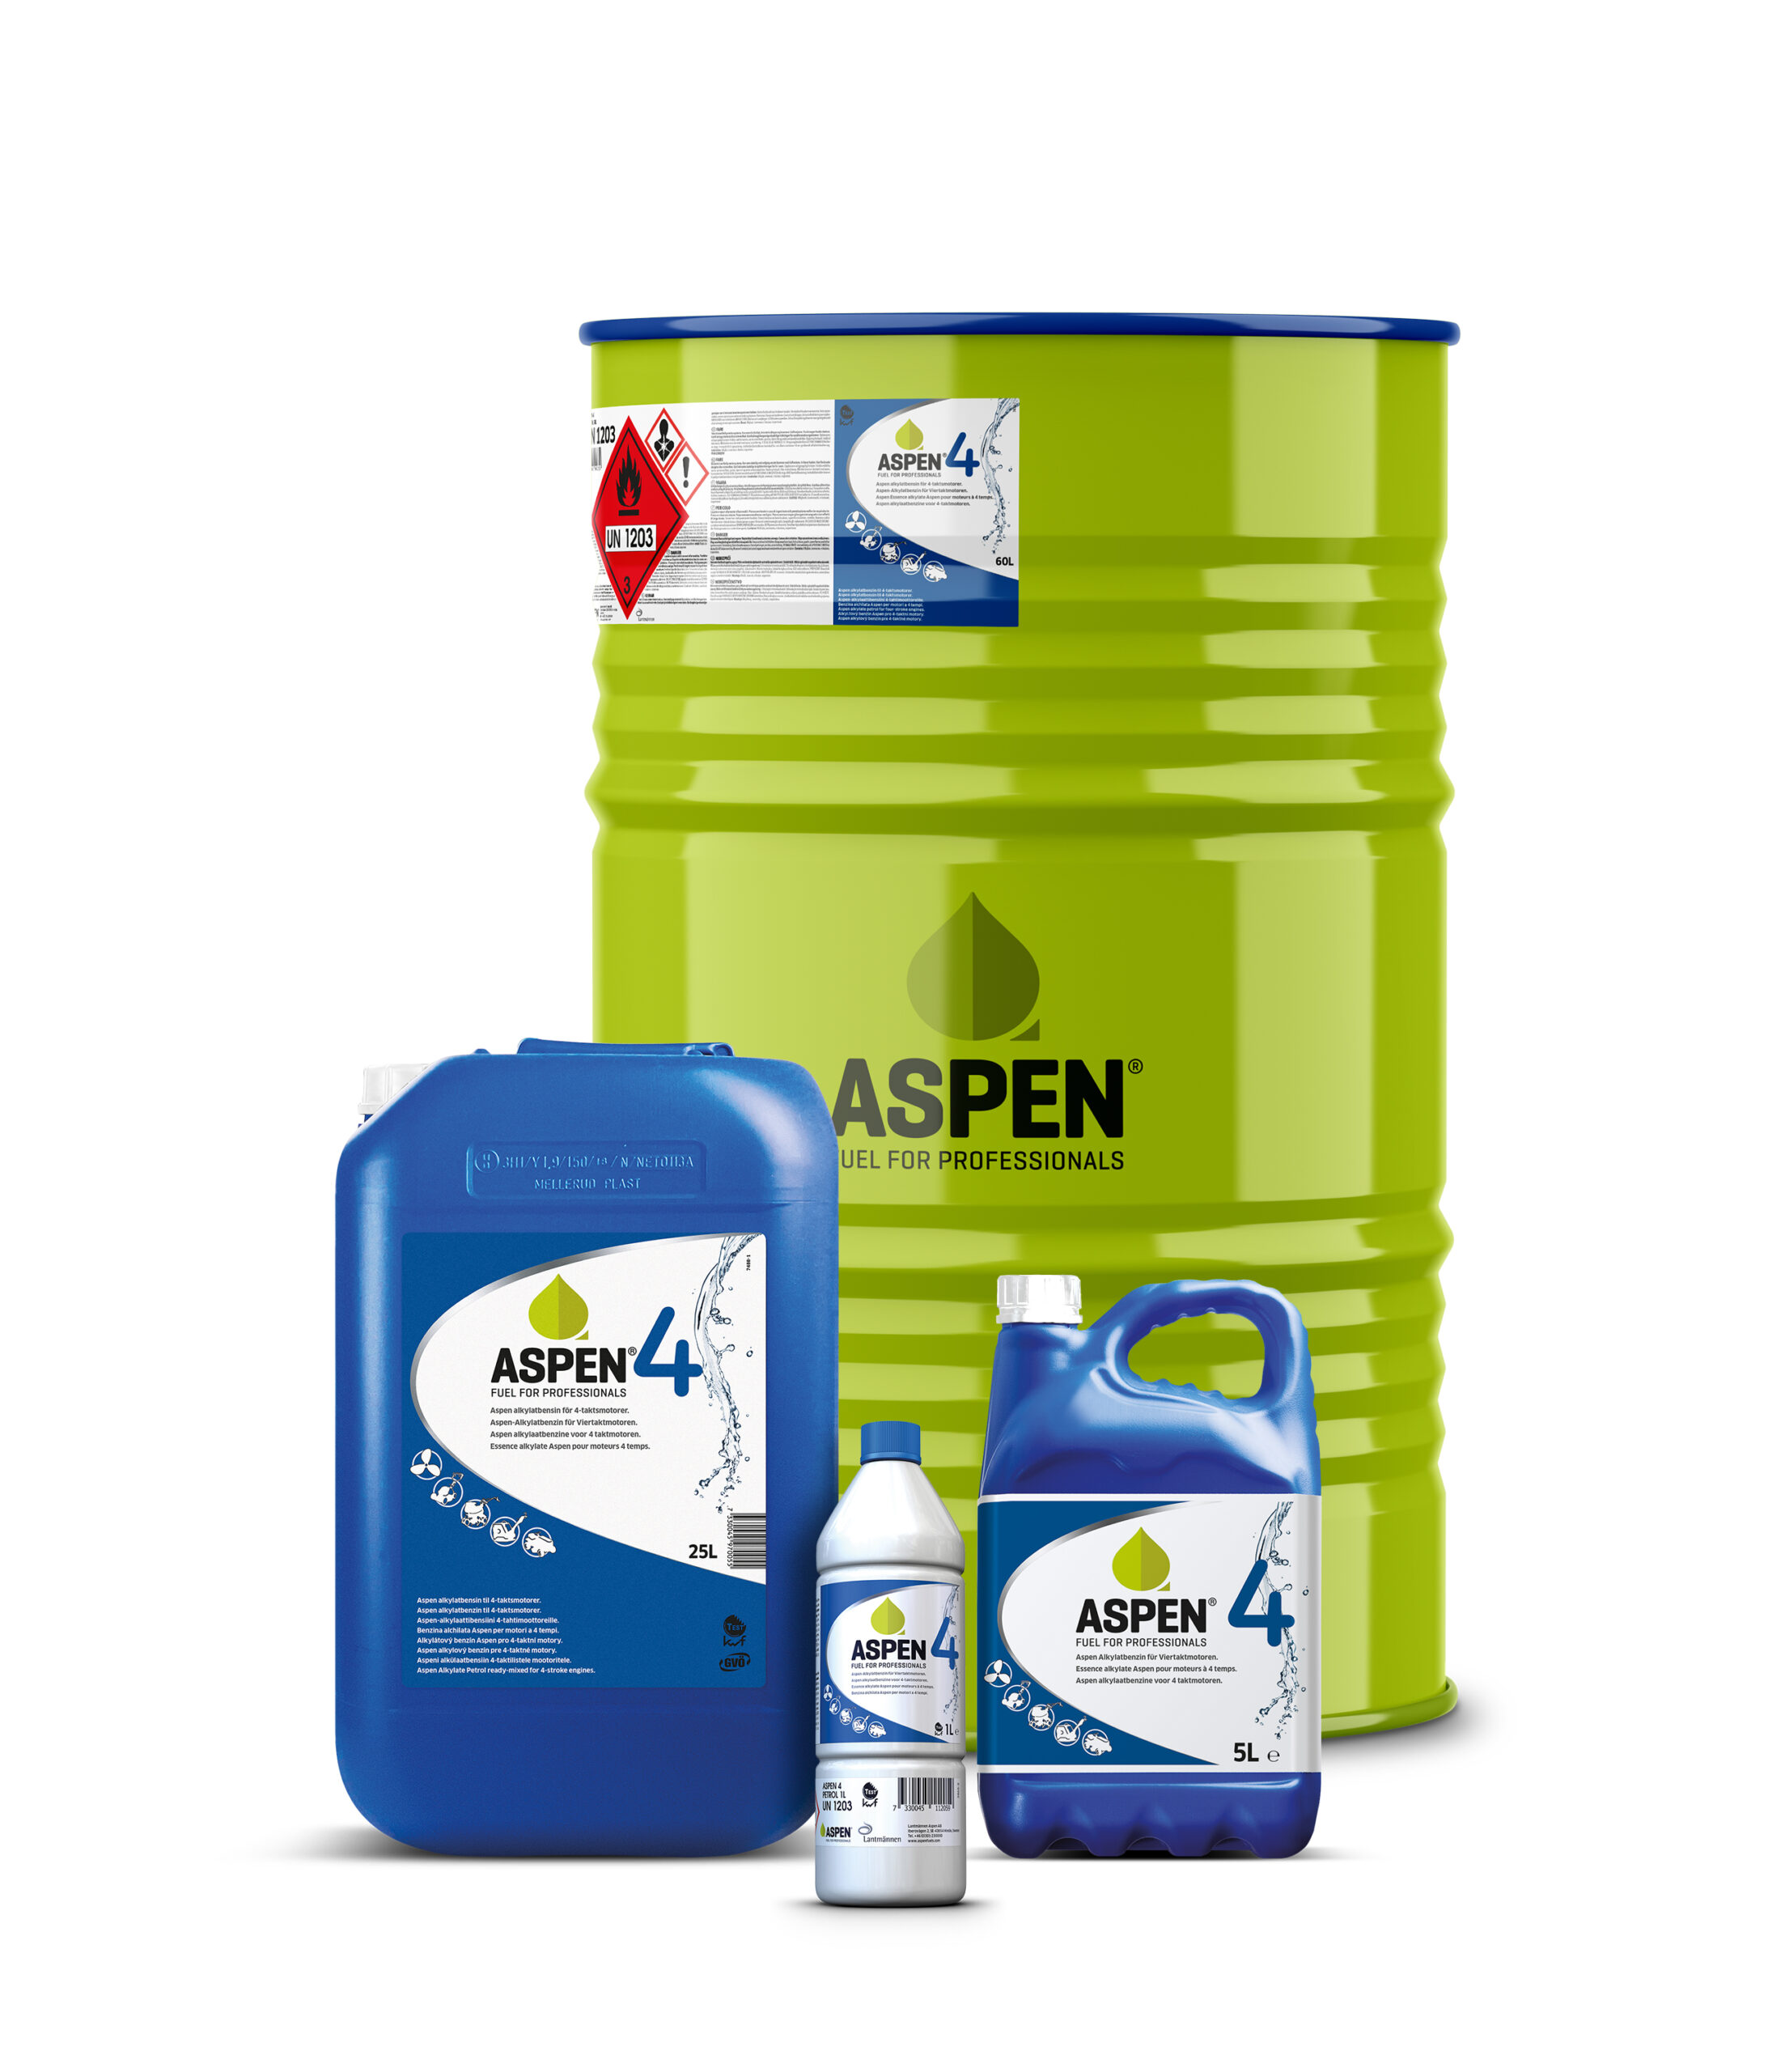 Aspen 4 Fuel for Professionals